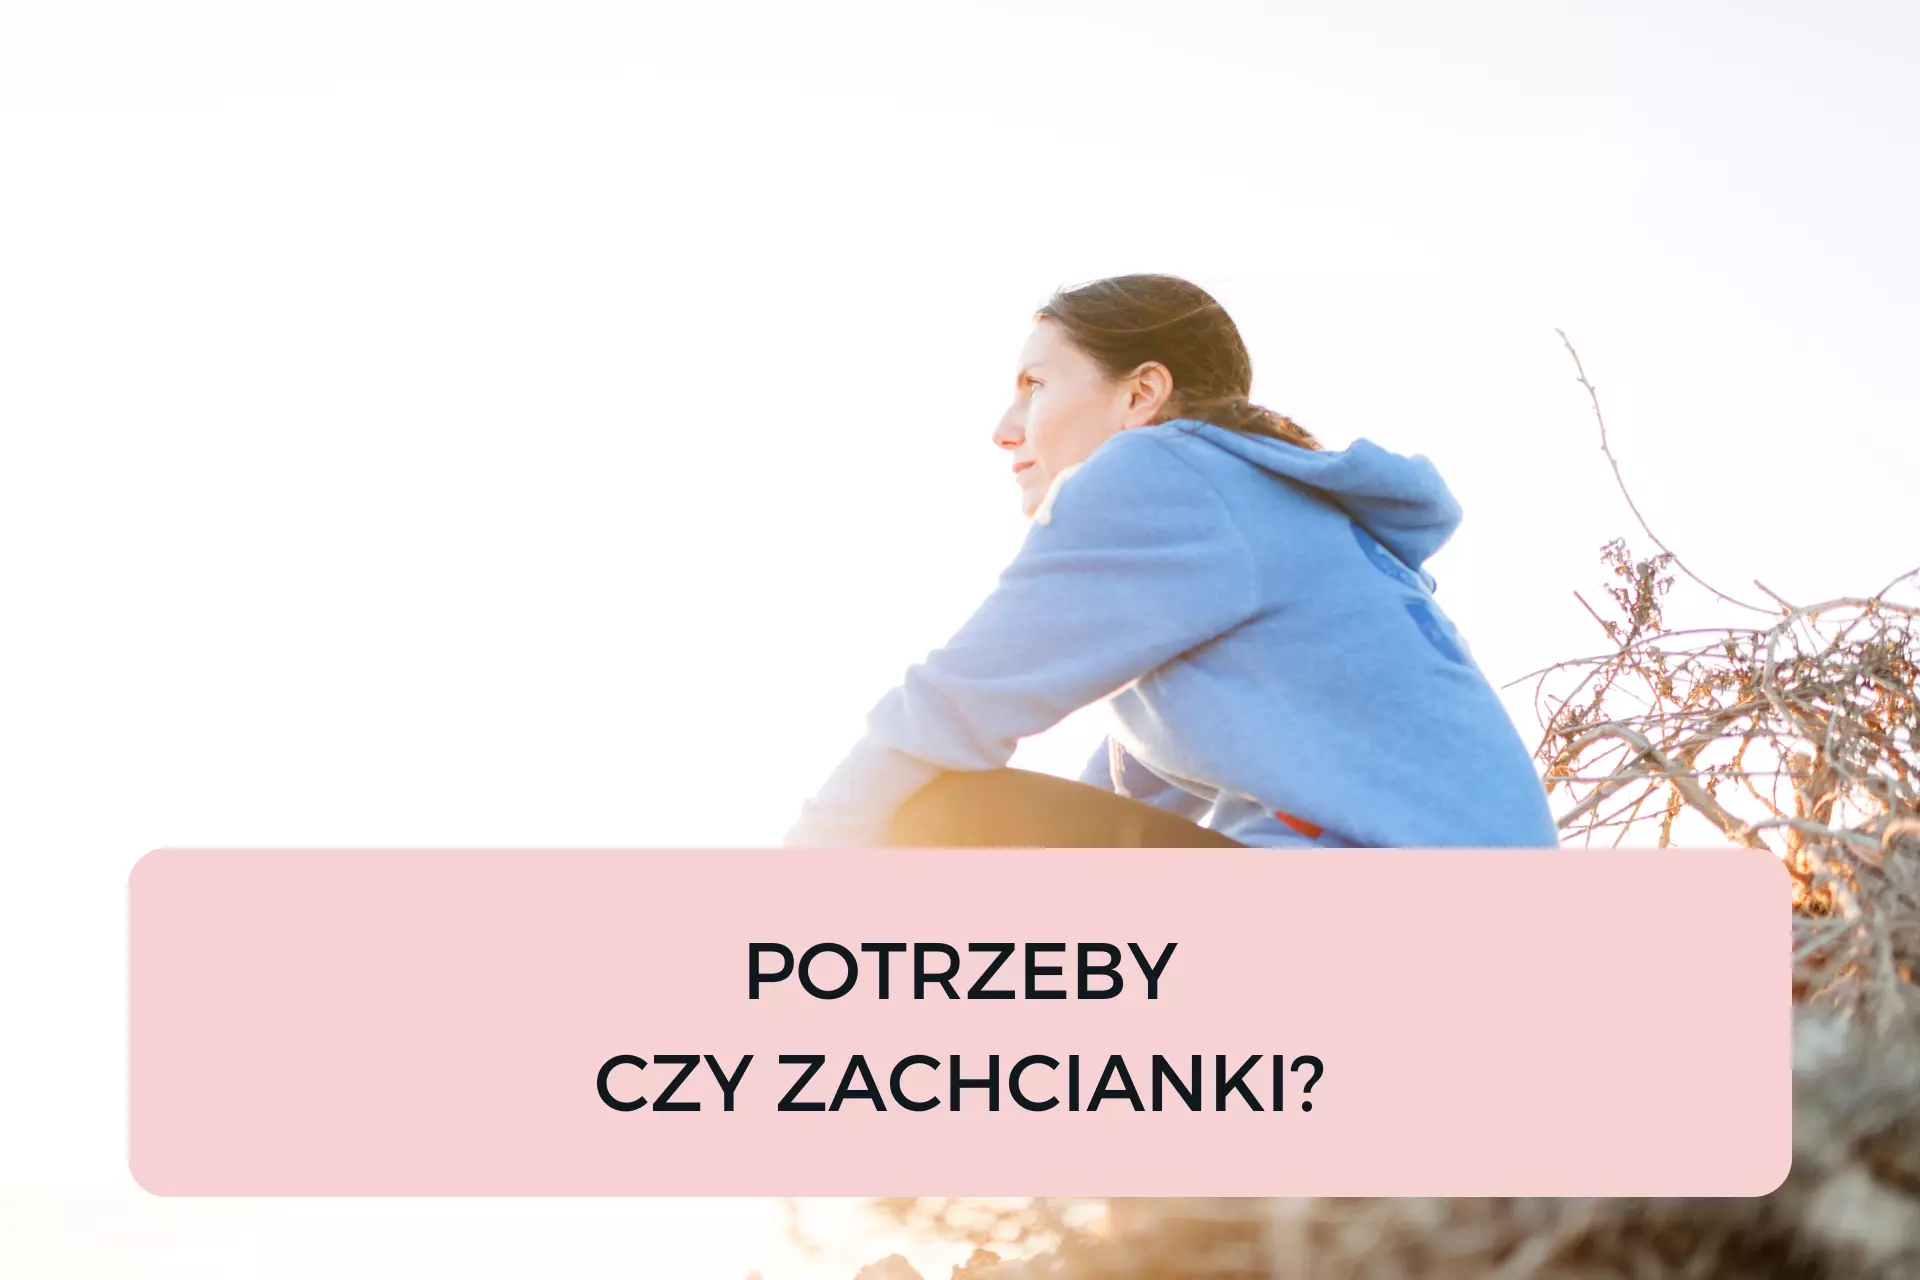 You are currently viewing POTRZEBY CZY ZACHCIANKI?